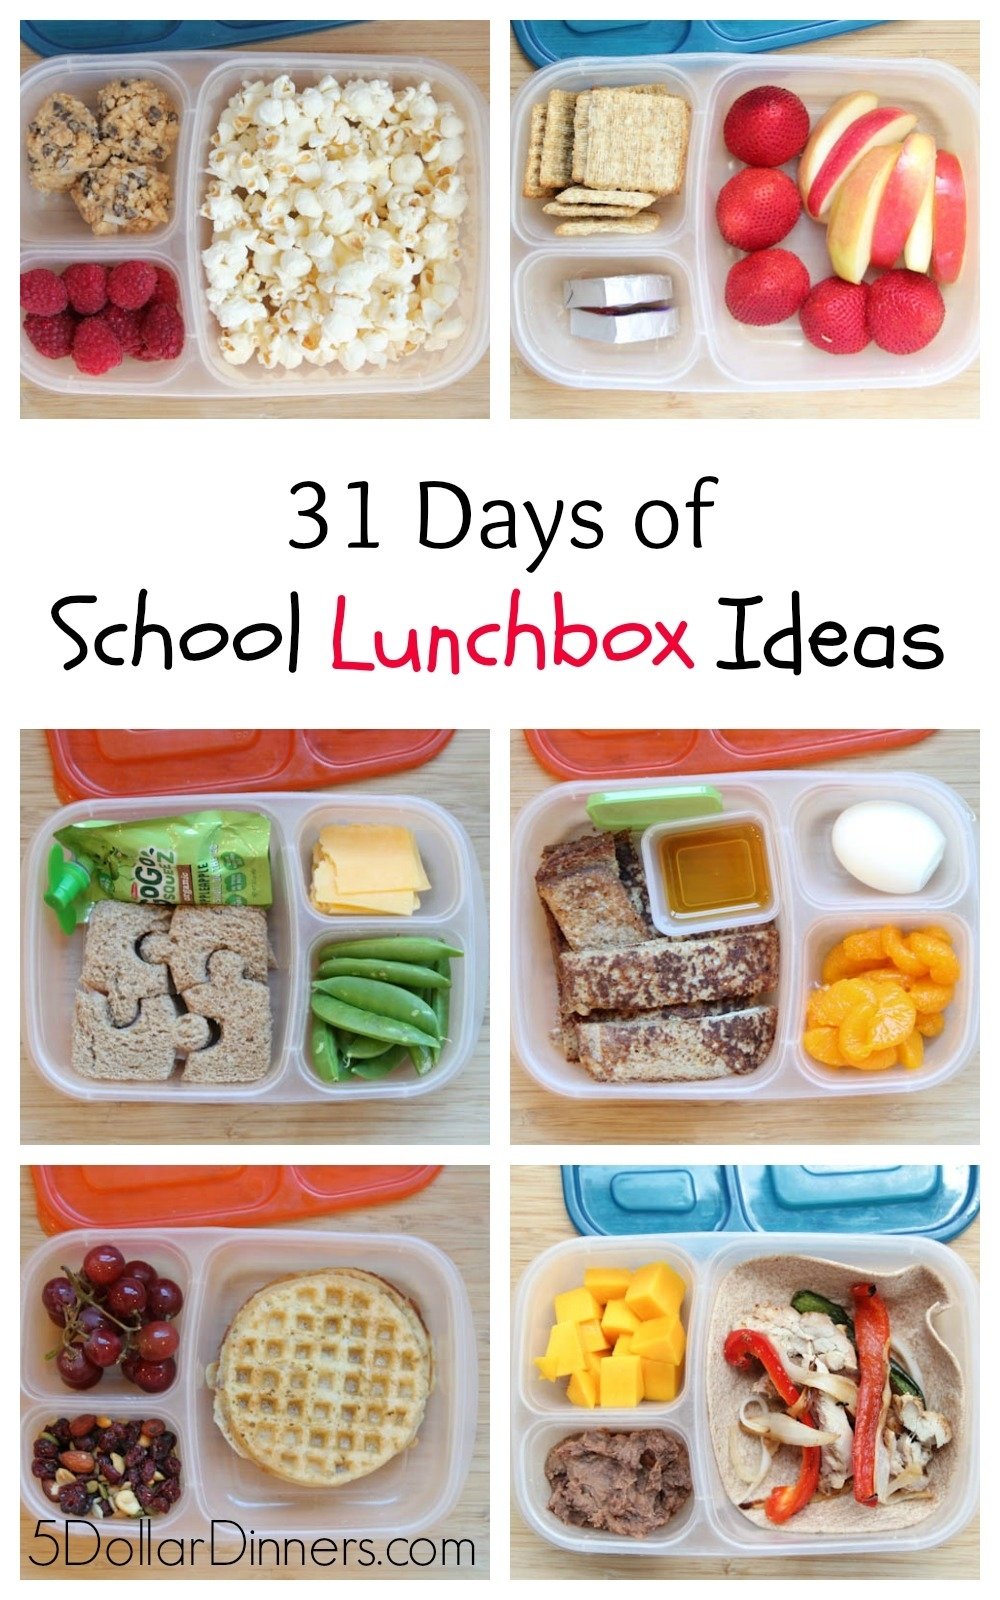 10 Nice Kid Lunch Ideas For School 31 days of school lunchbox ideas sq 1 2022